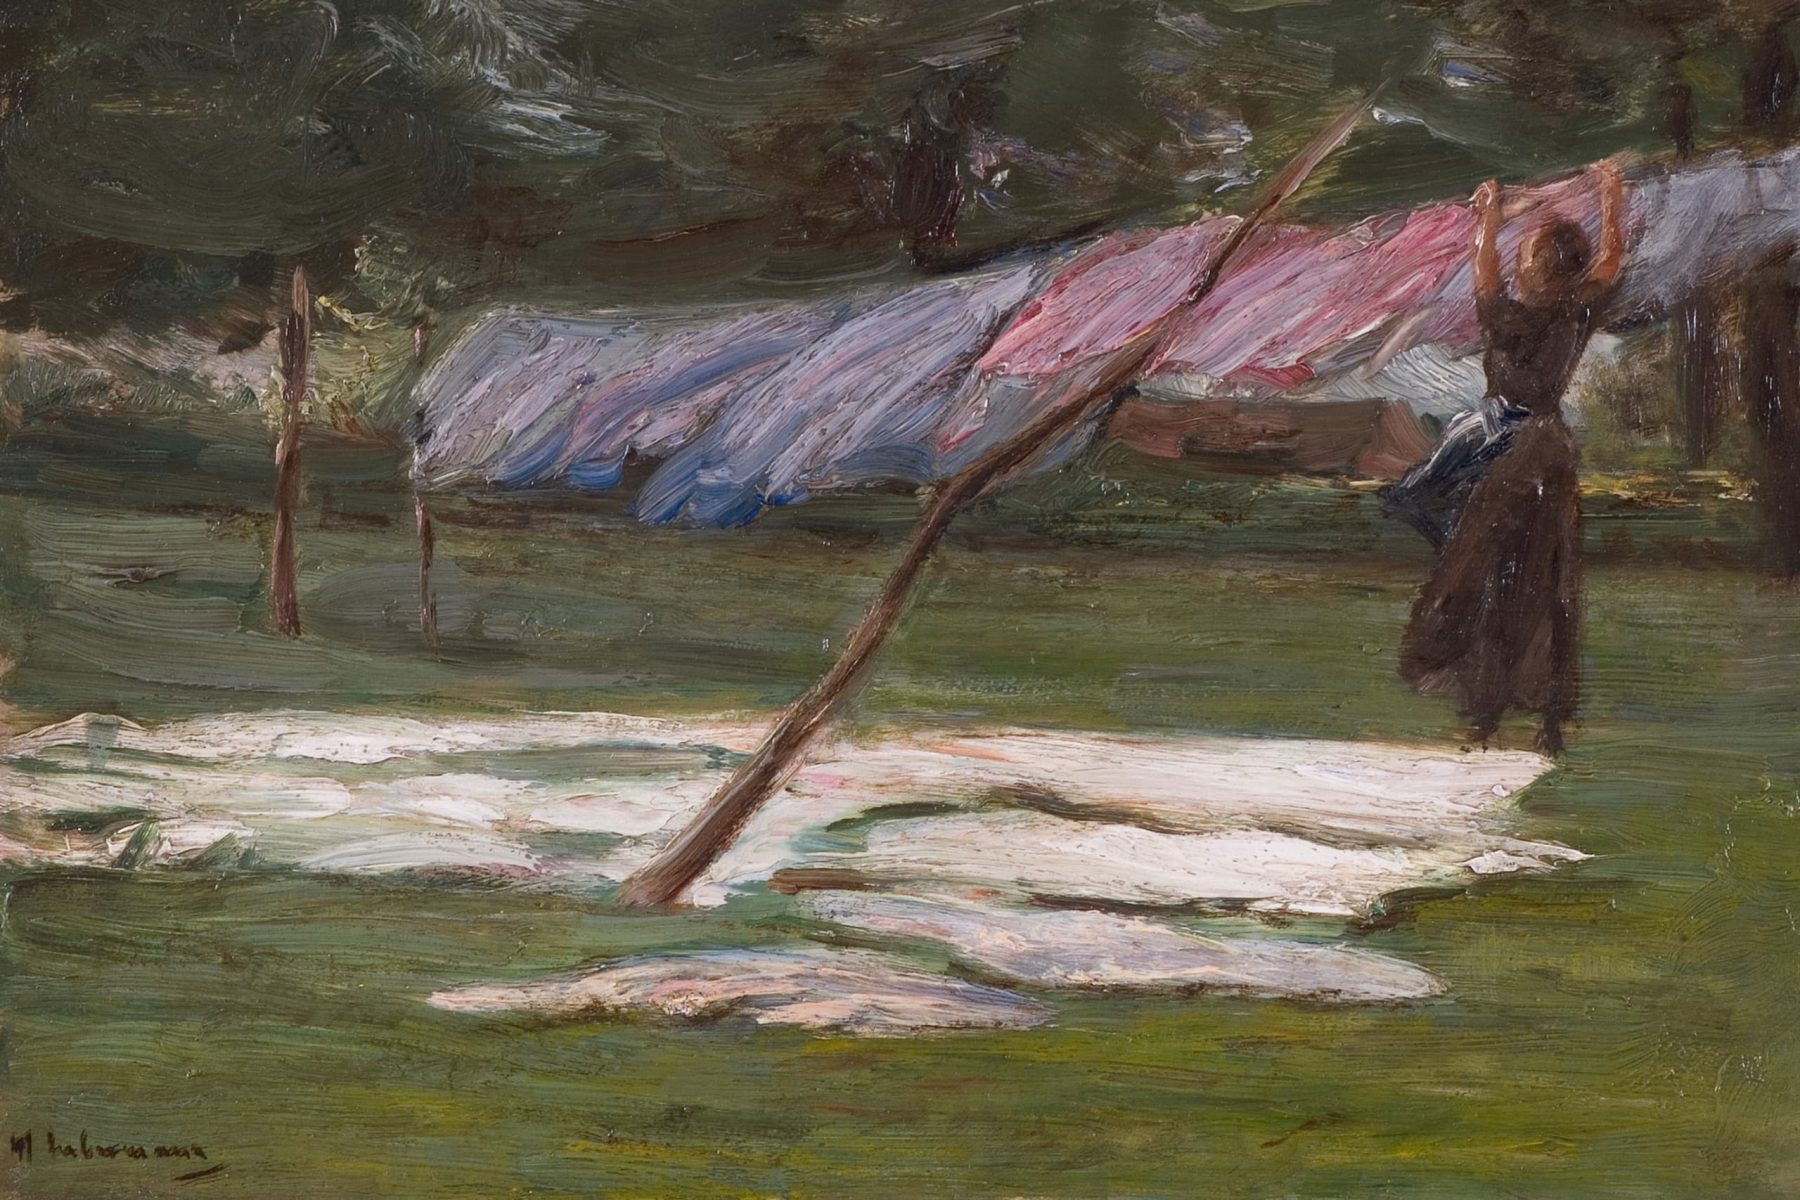 Ölstudie mit einer Frau die an einer Wäscheleine Wänsche aufhängt, die im Wind weht